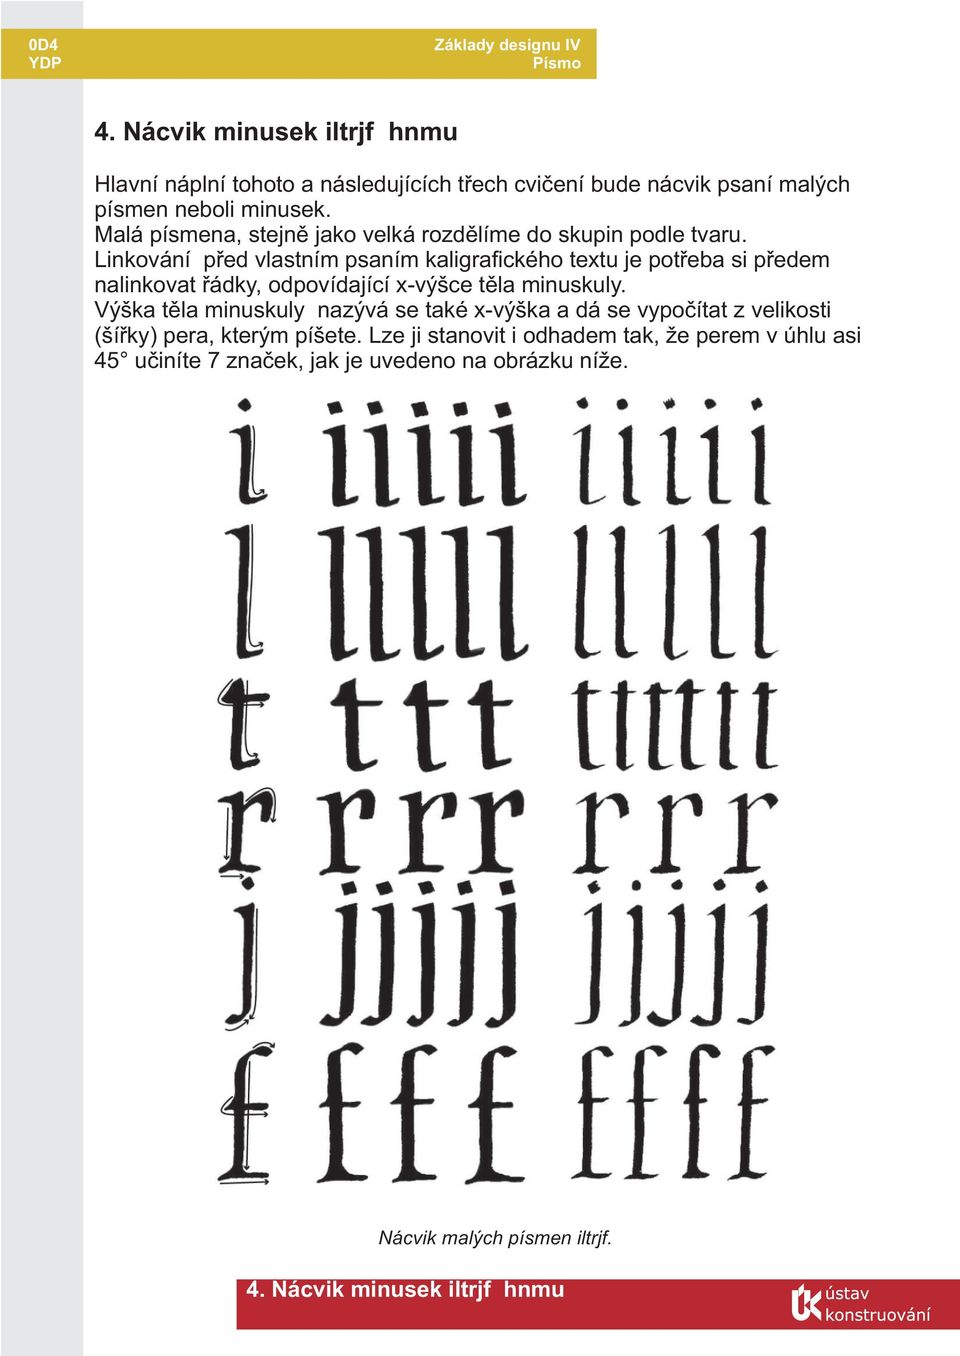 Linkování pøed vlastním psaním kaligrafického textu je potøeba si pøedem nalinkovat øádky, odpovídající x-výšce tìla minuskuly.